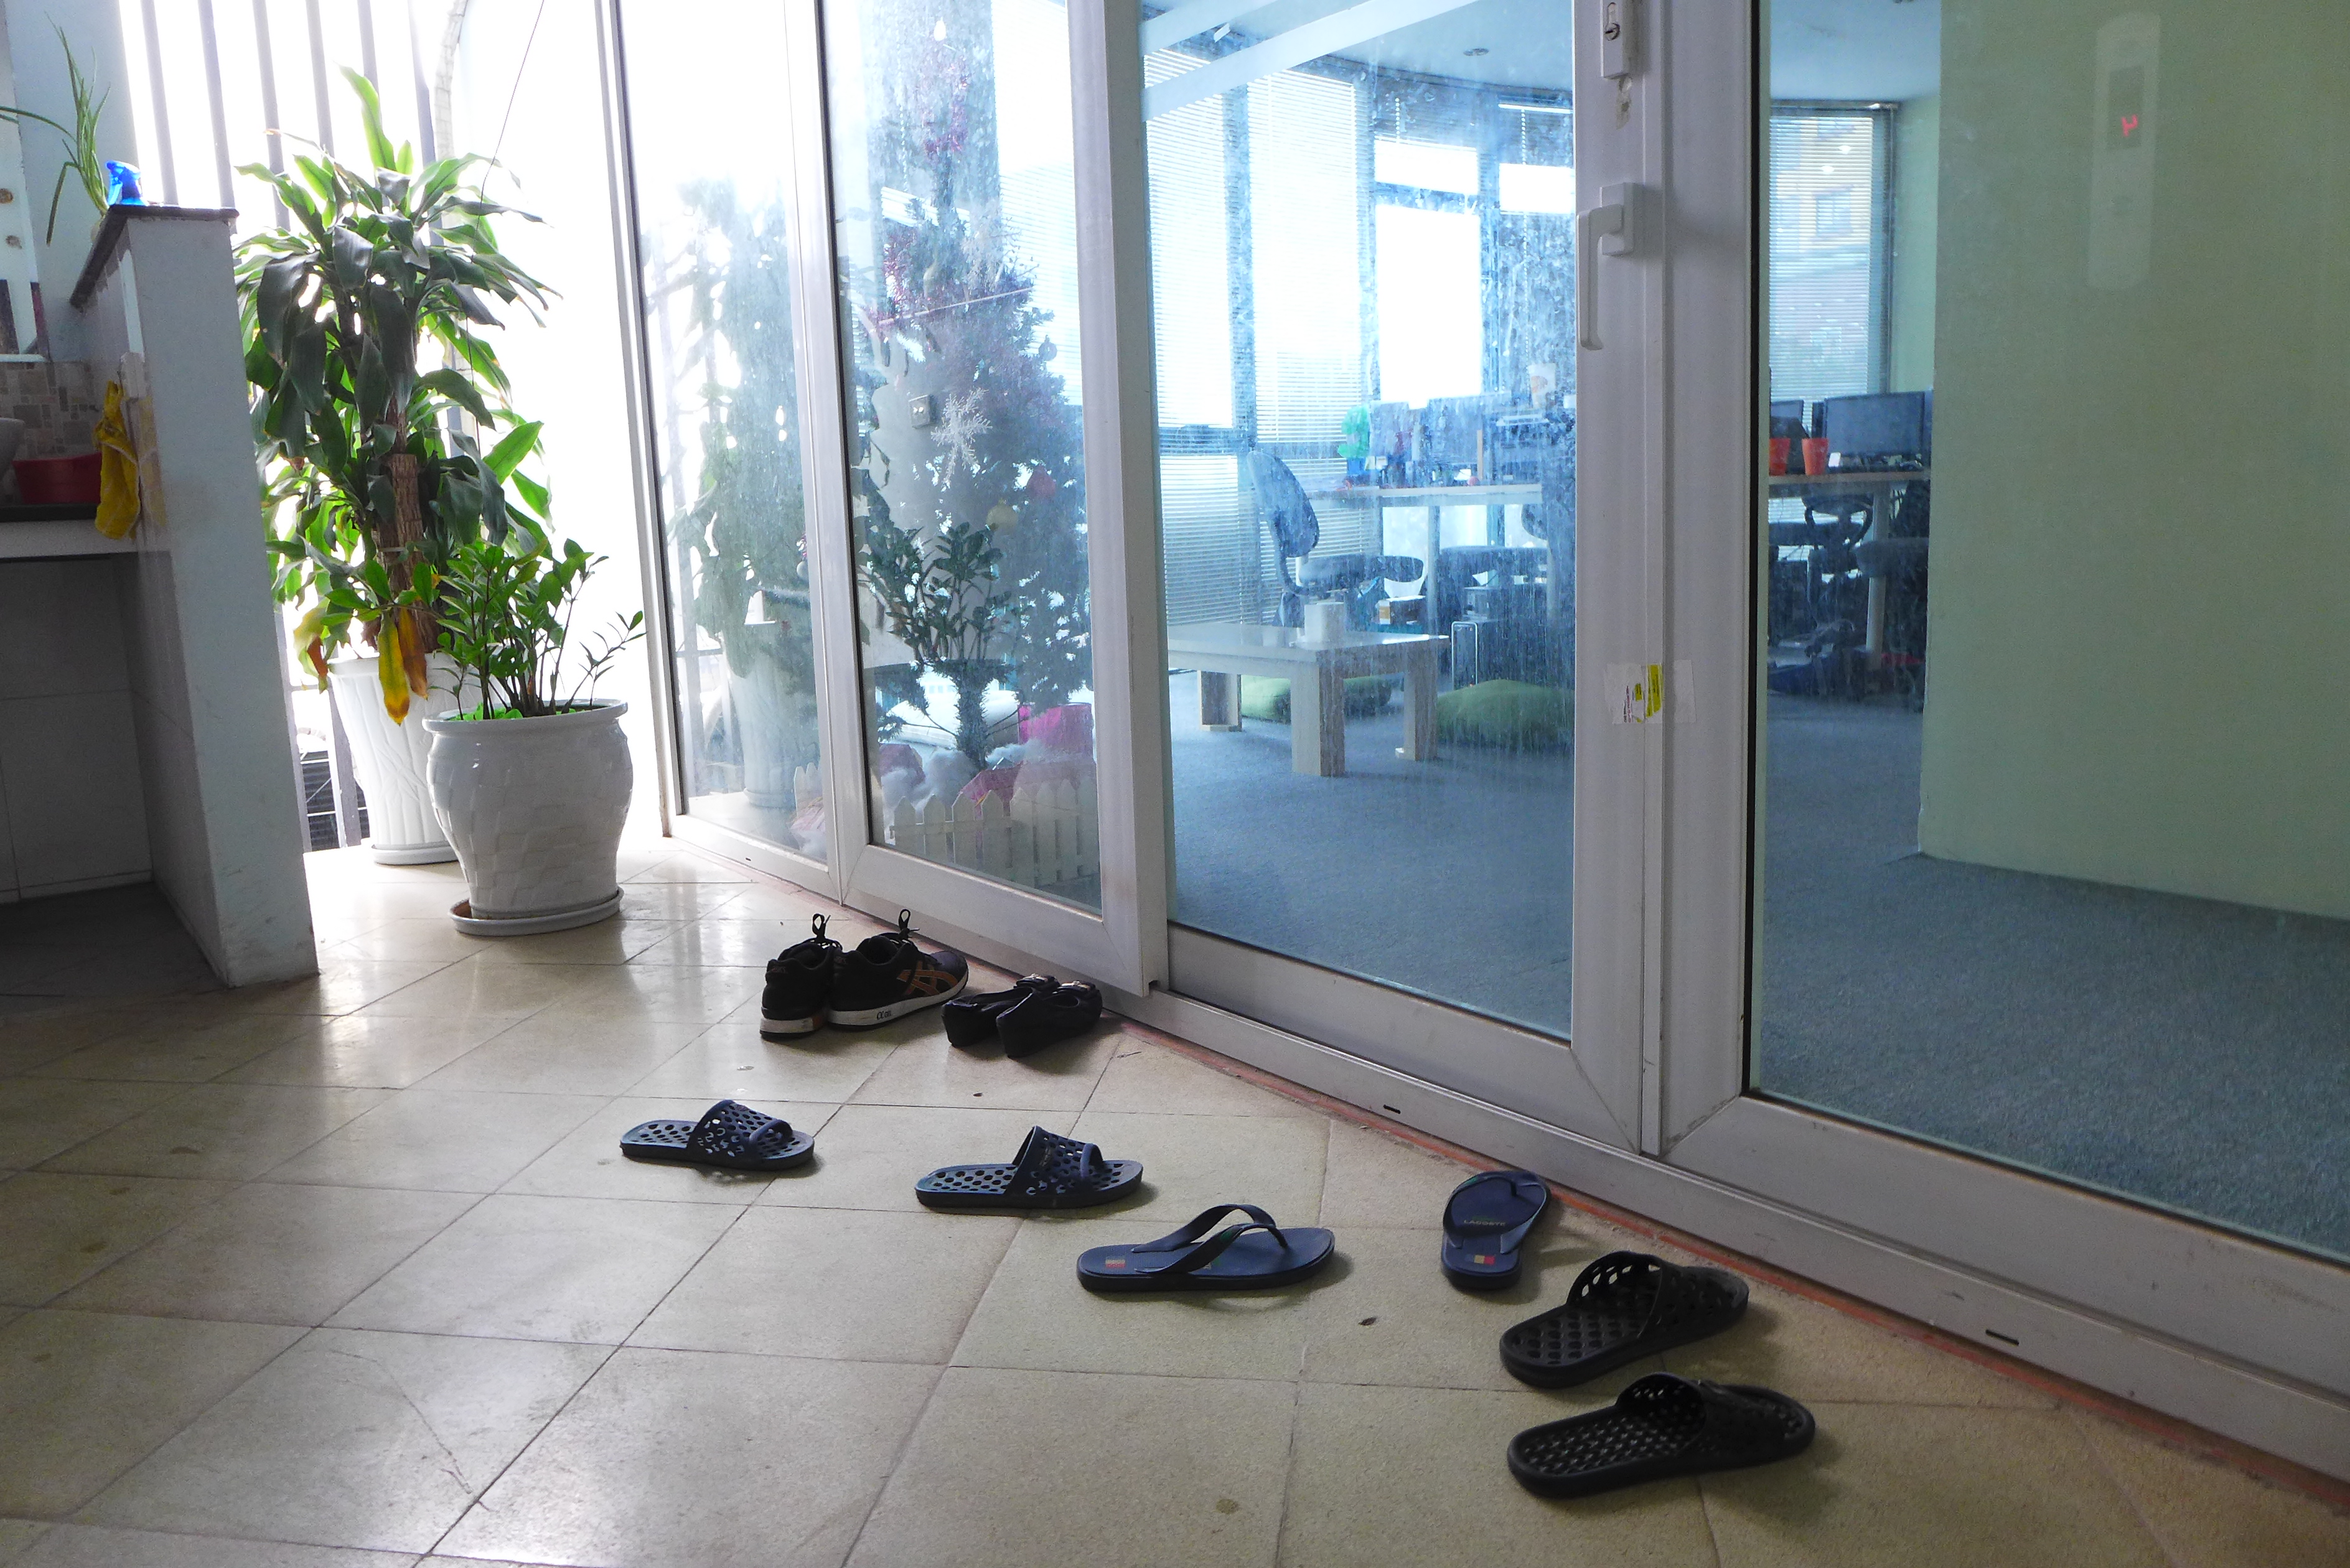 Avant d’entrer dans certains bureaux, au Vietnam, il faut se déchausser ! Les gens travaillent pieds nus parfois à leur bureau. Et quand il pleut, c’est obligatoire !